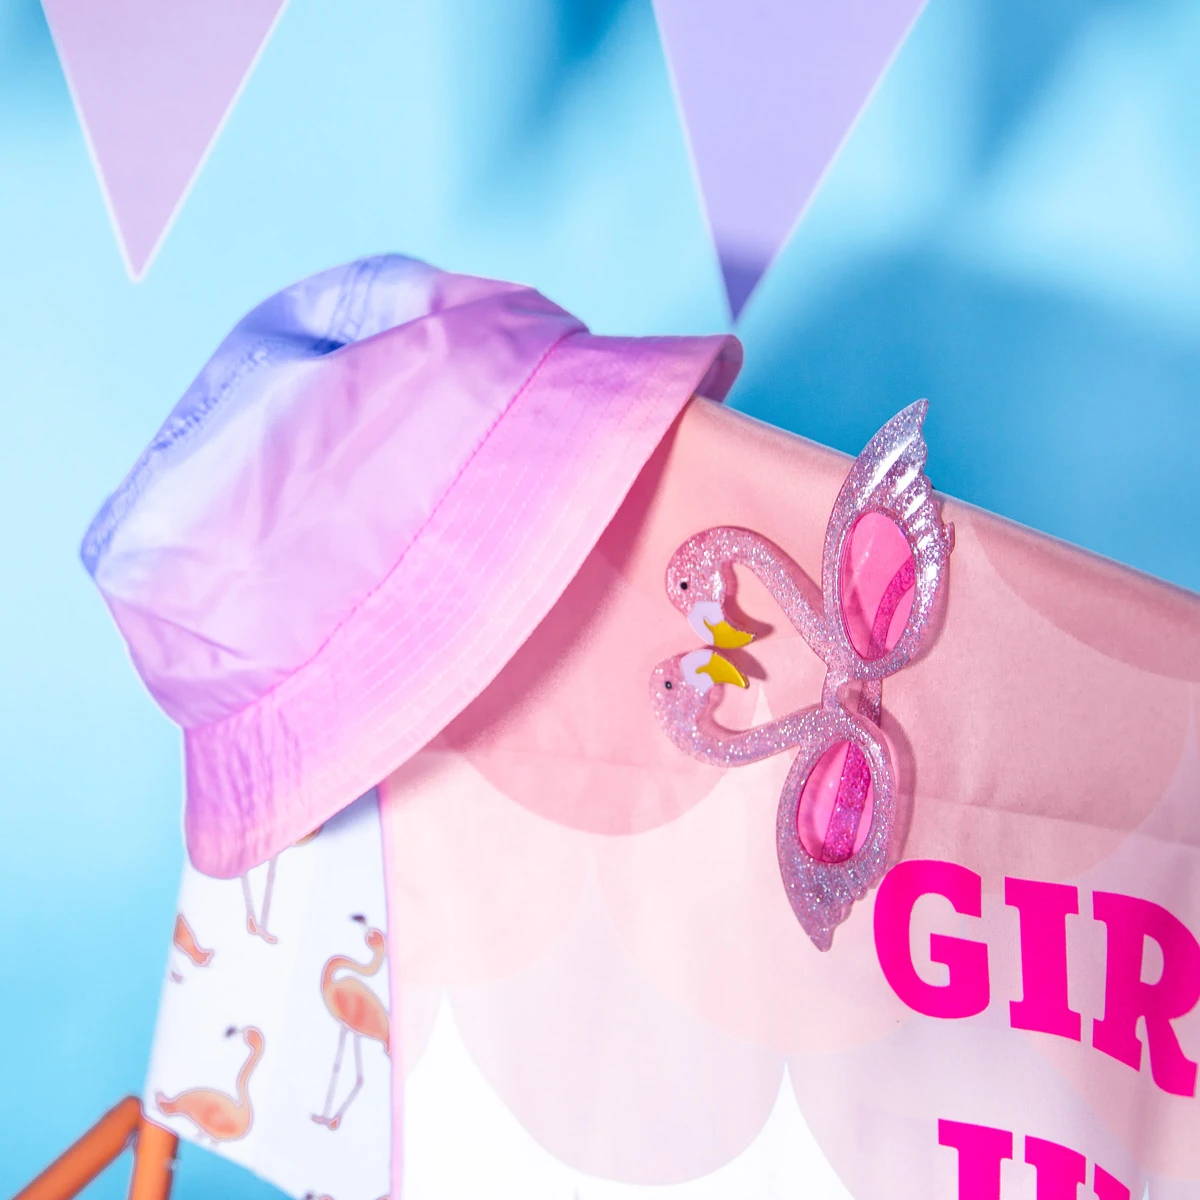 Akcesoria imprezowe w kształcie flamingów, w tym różowy kapelusz i błyszczące okulary w kształcie flamingów na drapowanej różowej tkaninie.